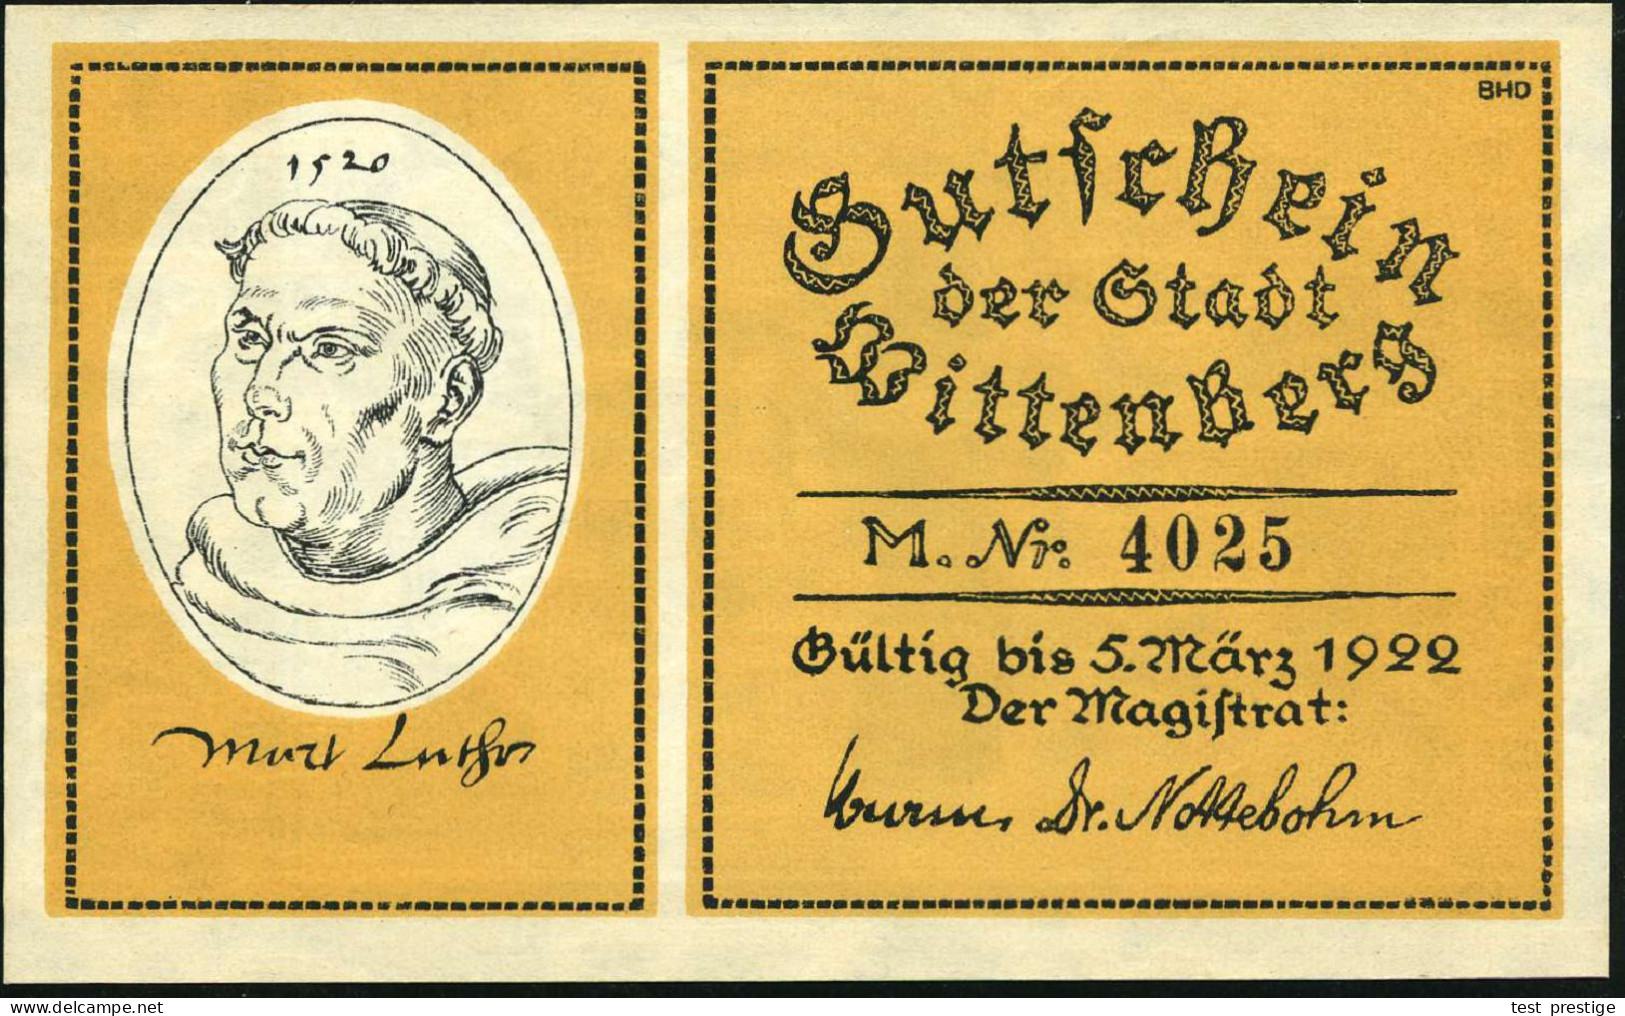 Wittenberg 1922 Infla-Notgeldscheine 25 Pf. (2), 50 Pf. (2) 1, 2 , 5 u.10 Mk, kompl. Serie v.8 Scheinen aus d.Geschichte